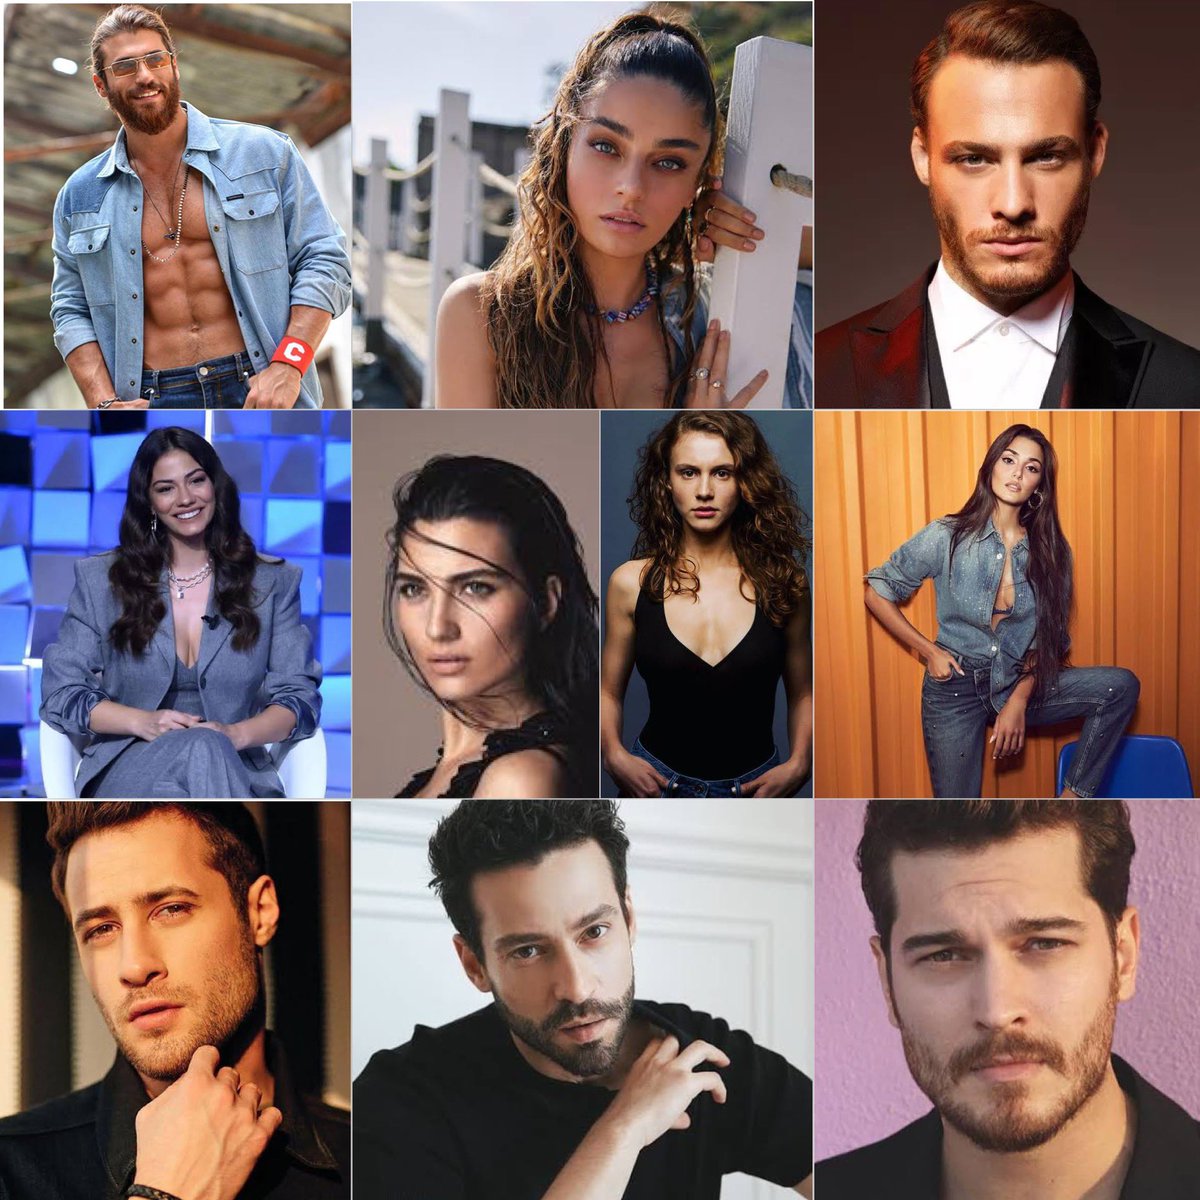 Bu hafta #IMDb Starmetre'de Türk oyuncuları ilk 10 sıralaması:
1. #CanYaman
2. #AyçaAyşinTuran 
3. #KeremBursin 
4. #DemetÖzdemir 
5. #TubaBüyüküstün 
6. #AhsenEroğlu 
7. #HandeErçel 
8. #OzanDolunay
9. #EkinKoç 
10. #ÇağatayUlusoy